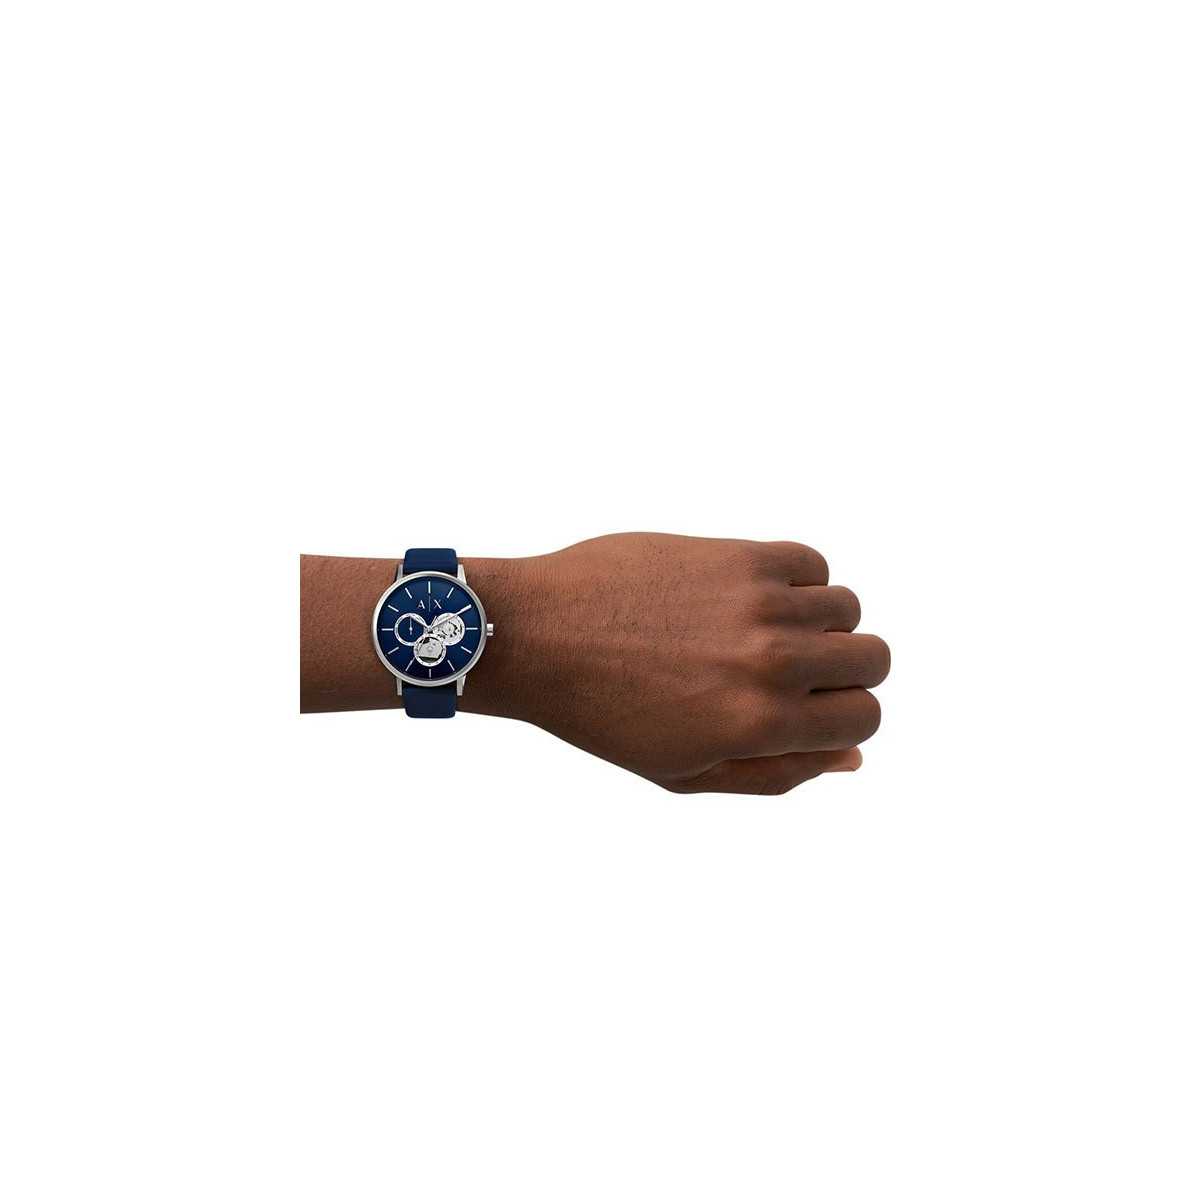 Reloj Armani Exchange Cayde AX2746